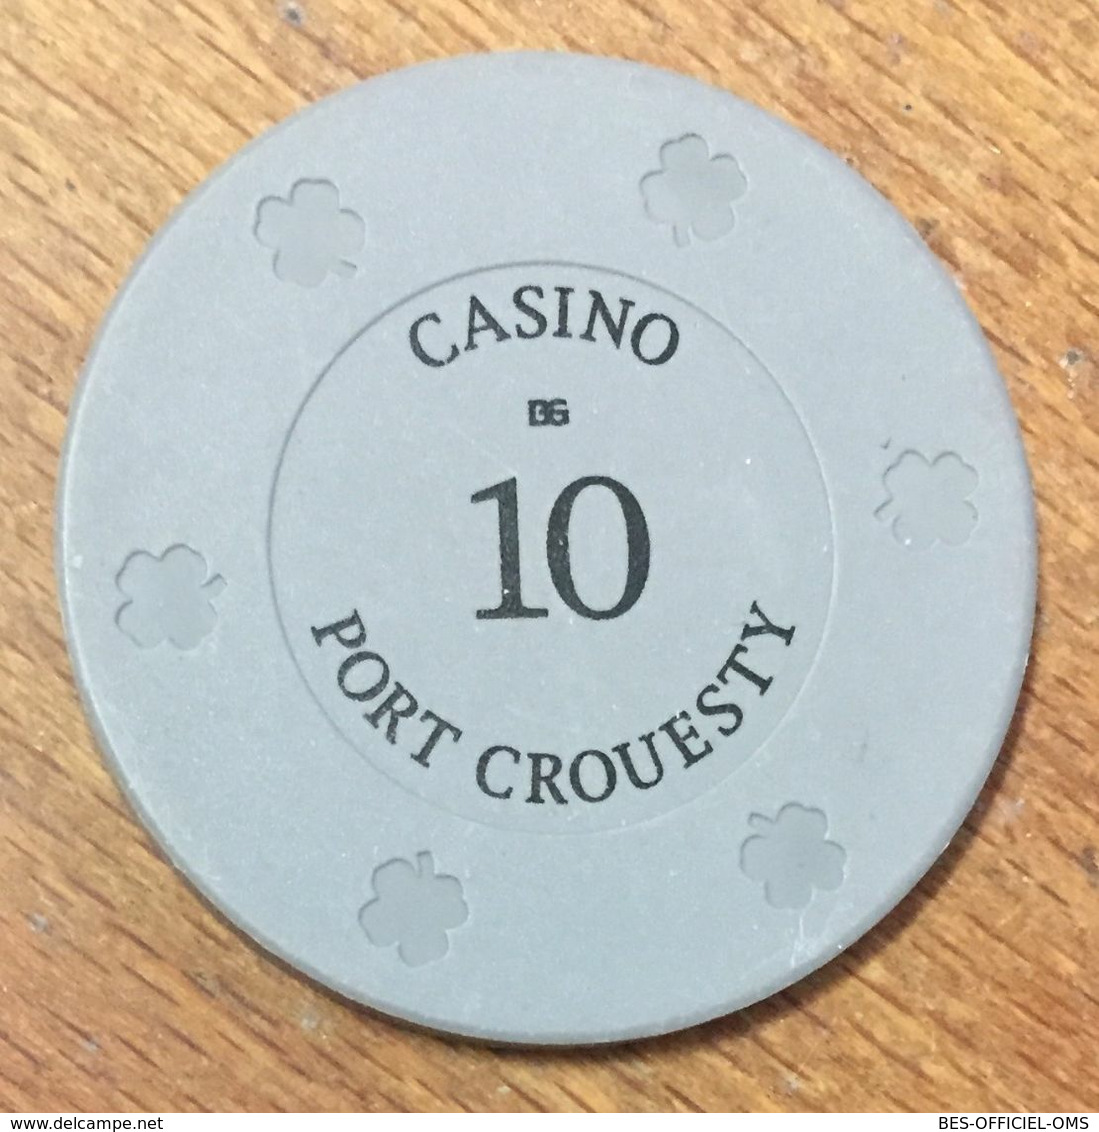 56 PORT CROESTY CASINO JETON DE 50 FRANCS CHIP TOKENS COINS GAMING - Casino